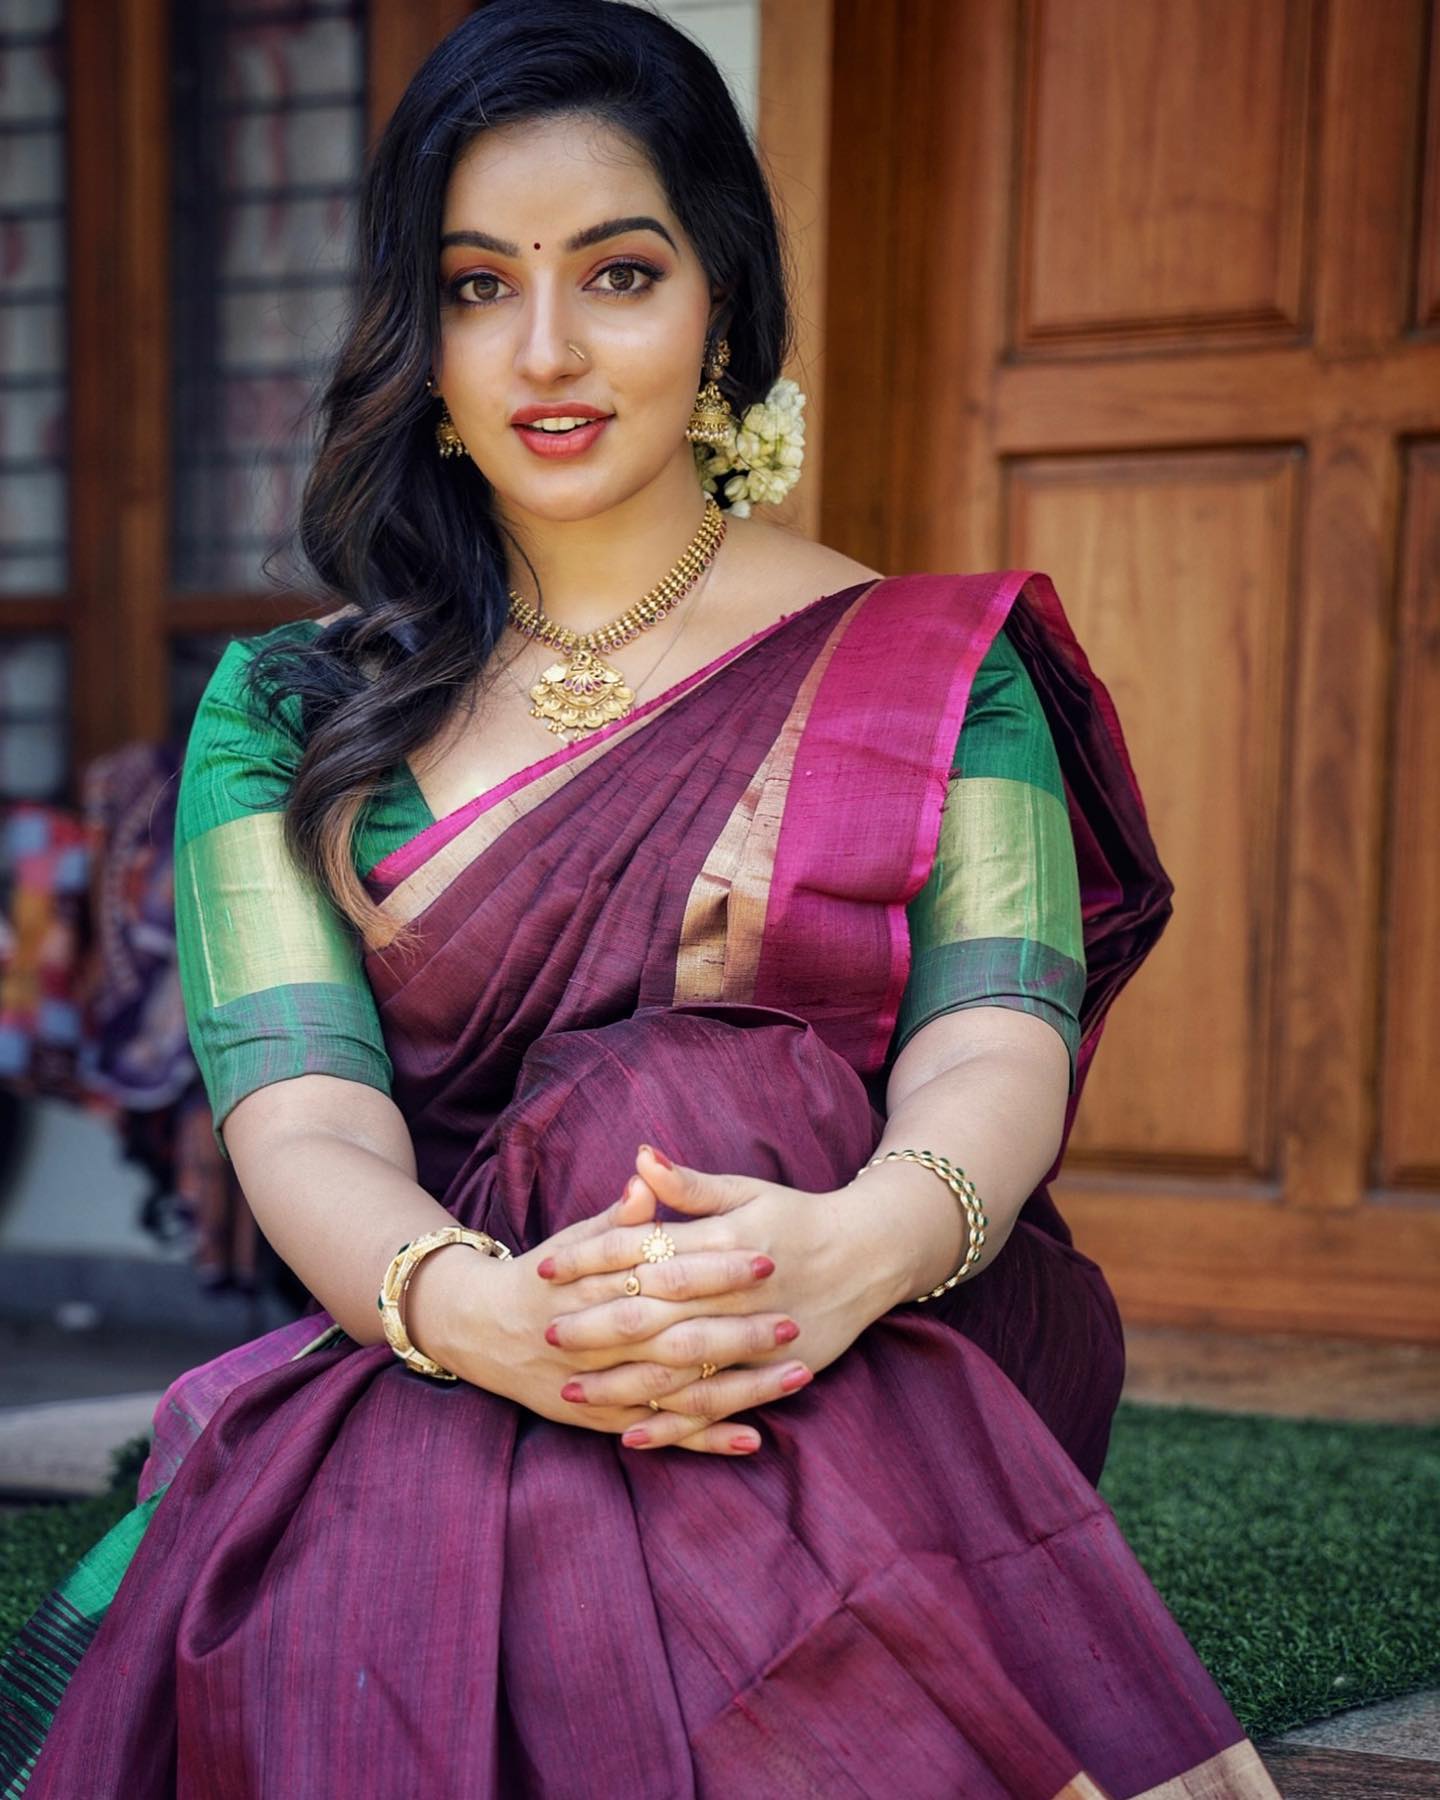 malavika-menon-beautiful-look-in-saree-photos-001.jpg